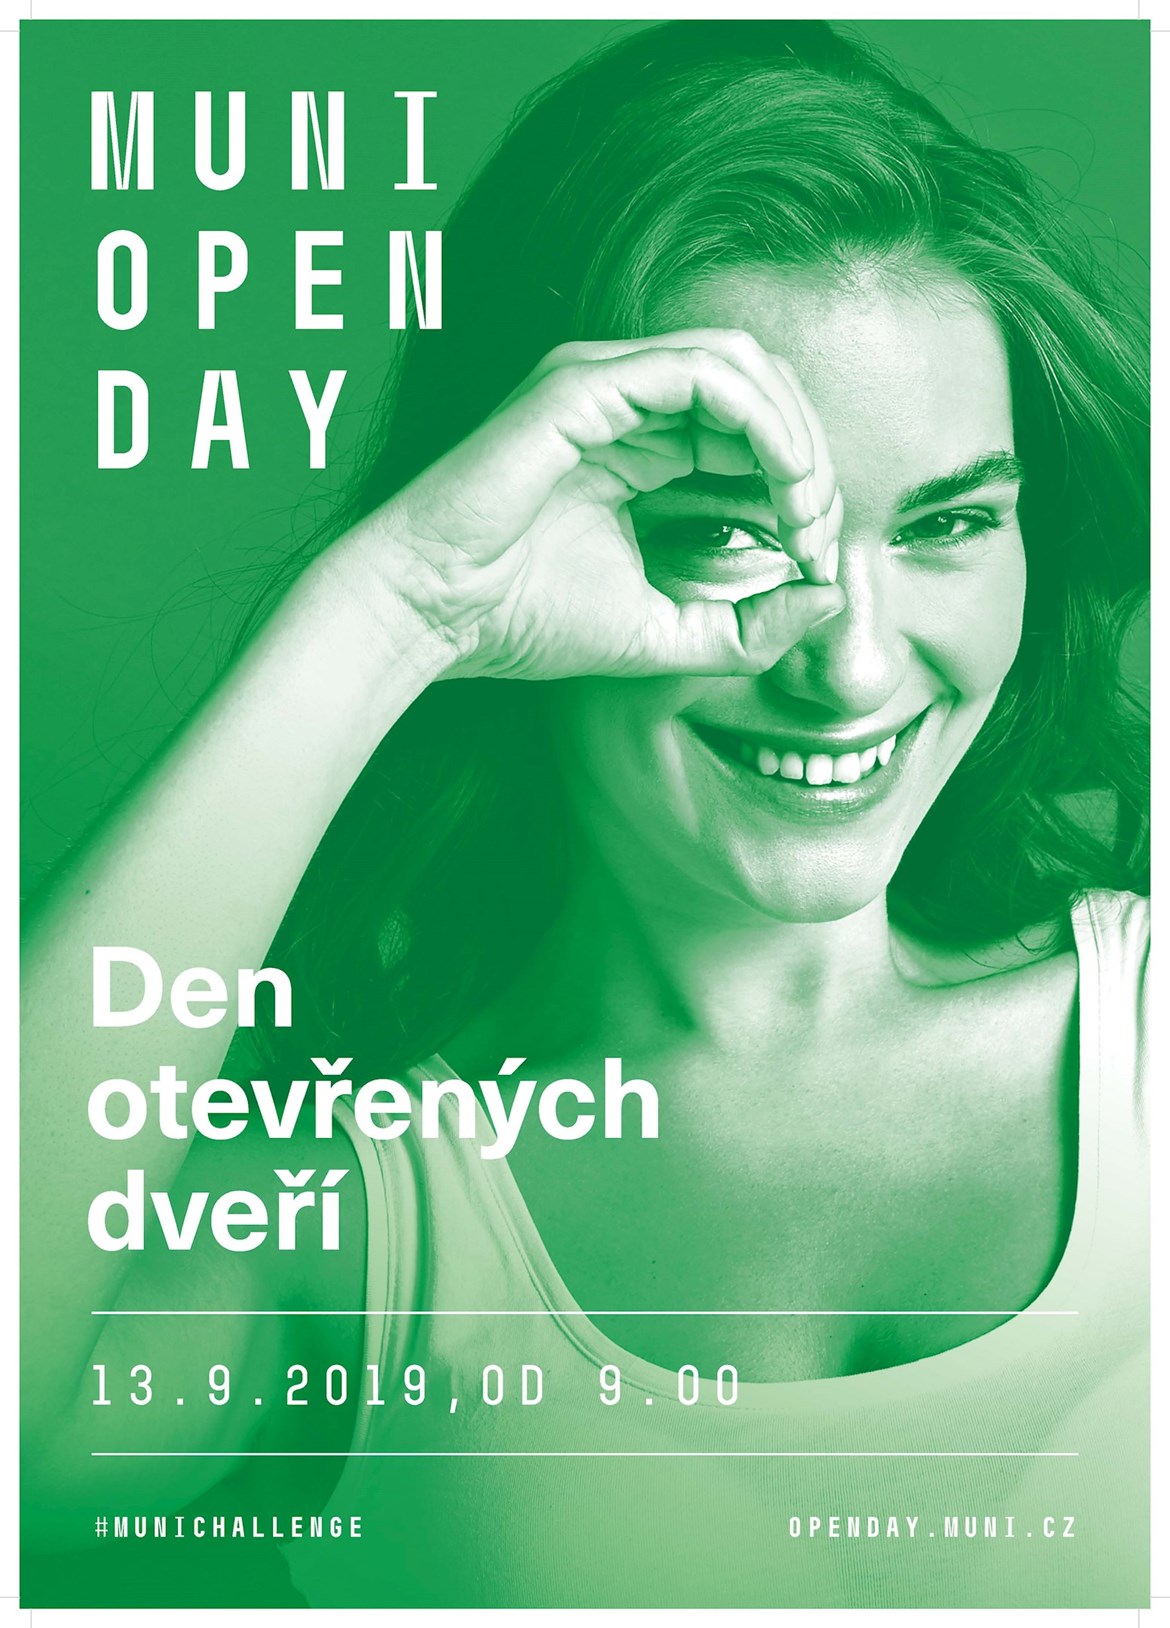 https://www.muni.cz/open-day